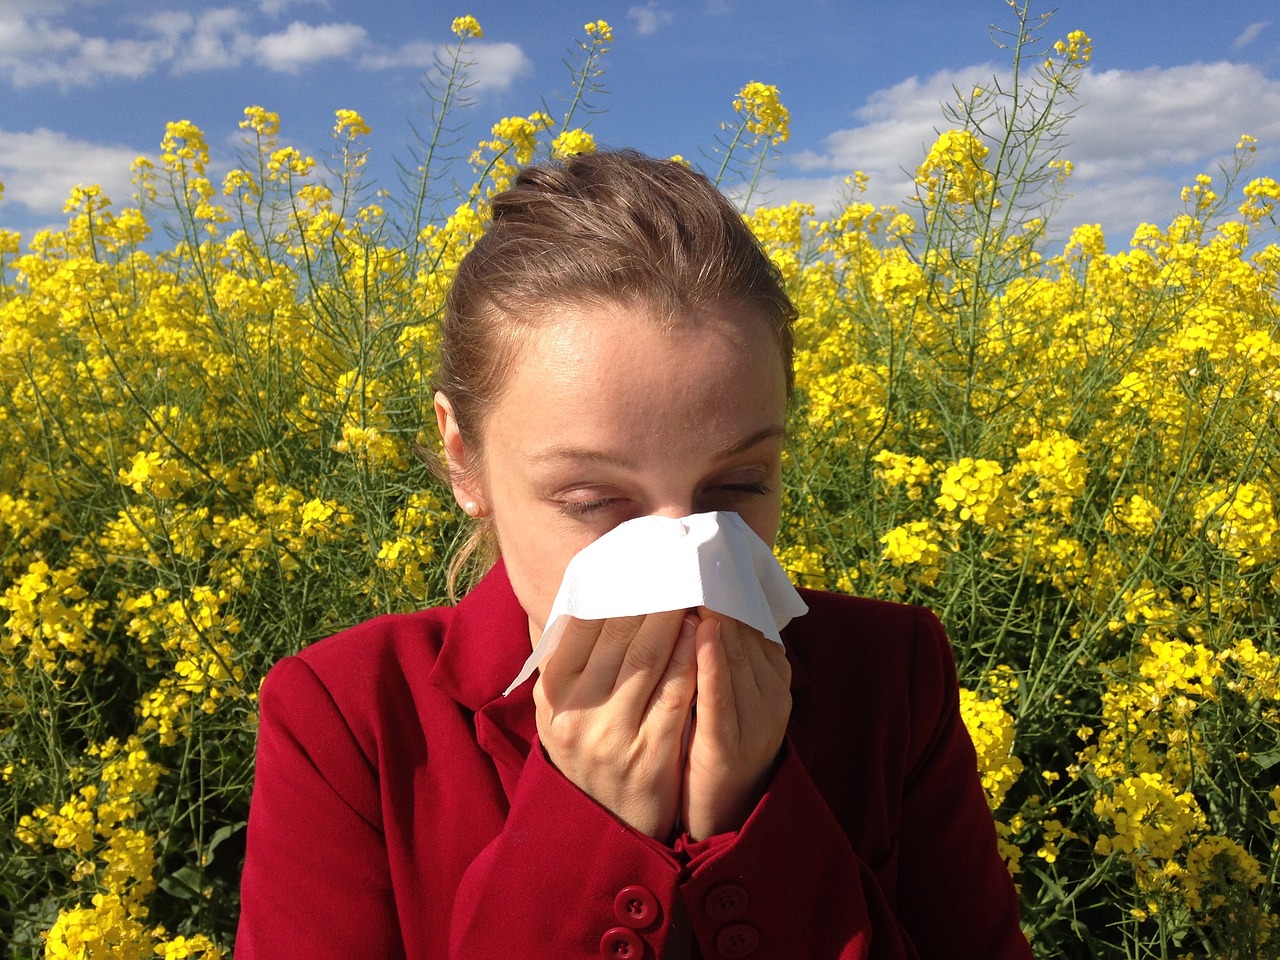 Reakcja alergiczna – co warto wiedzieć?